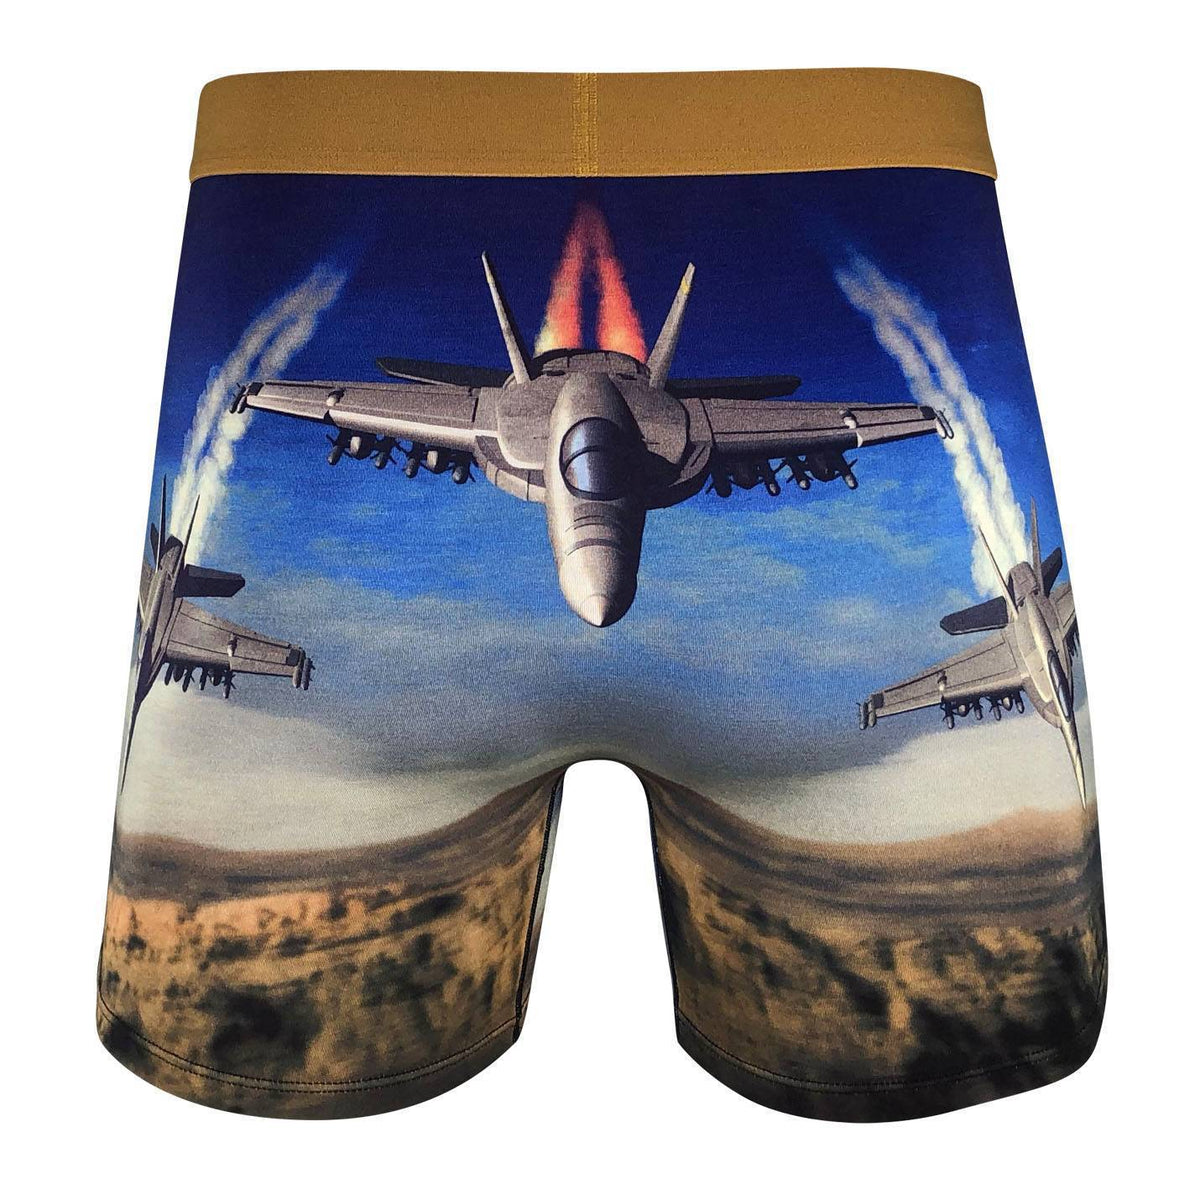 Men's F/A-18 Hornet Combat Jet Underwear – Good Luck Sock